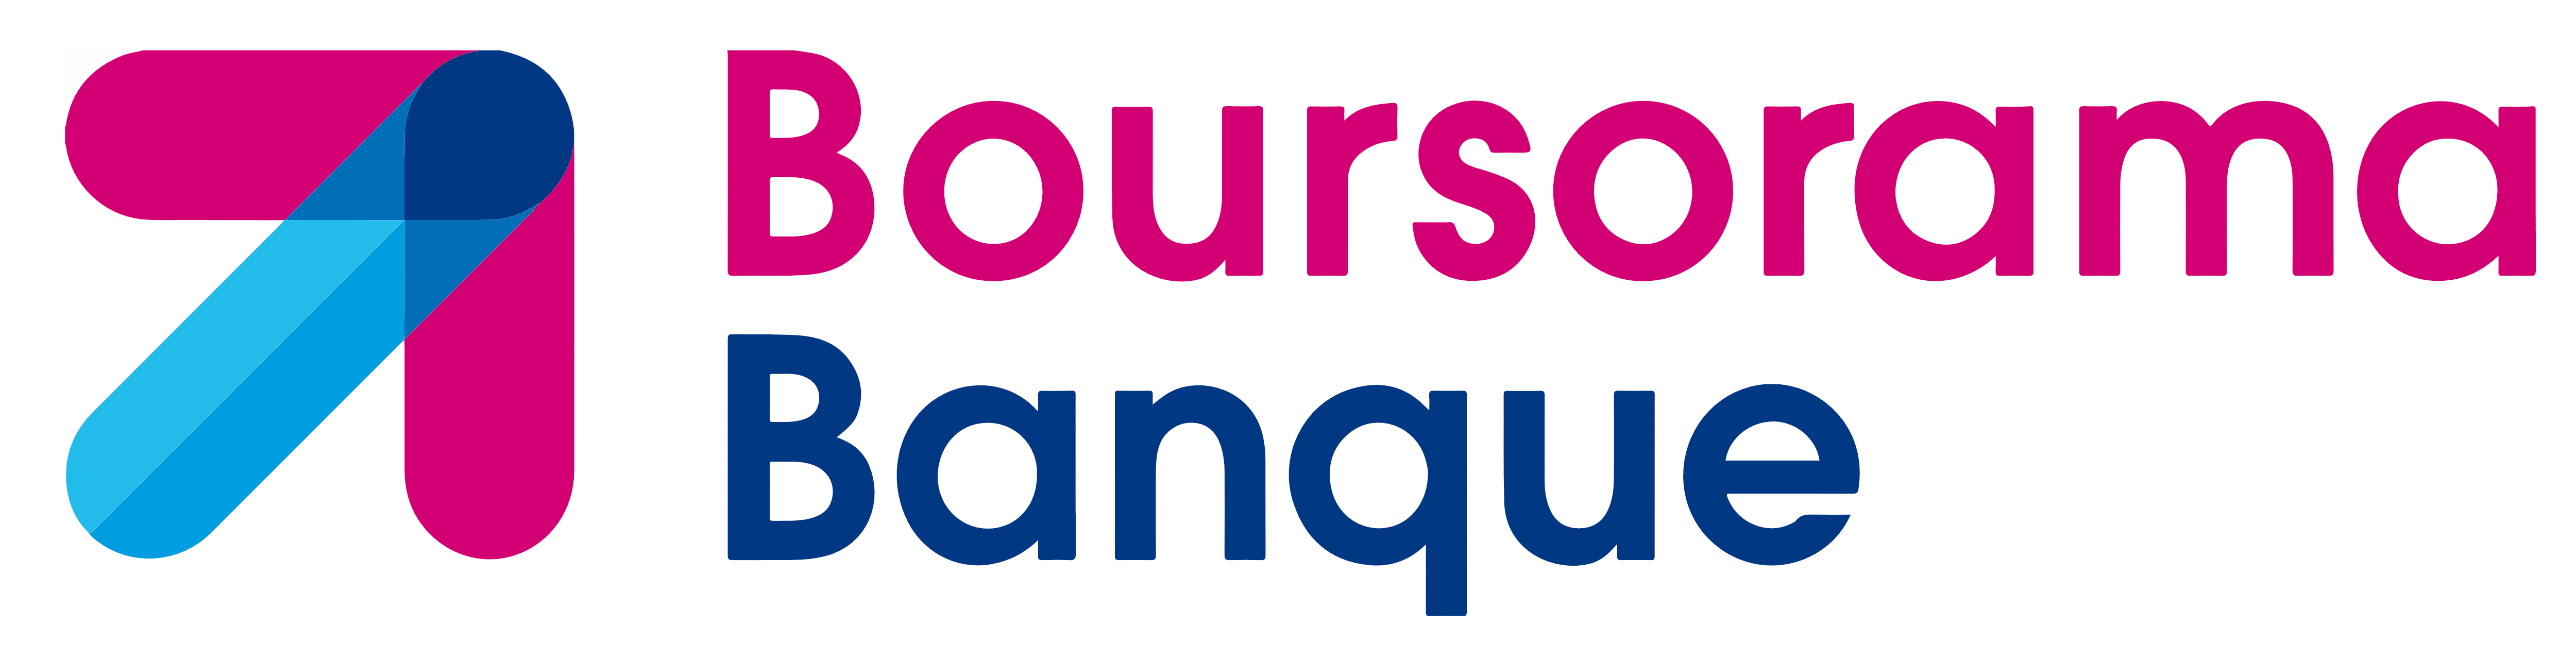 Image result for boursorama logo"